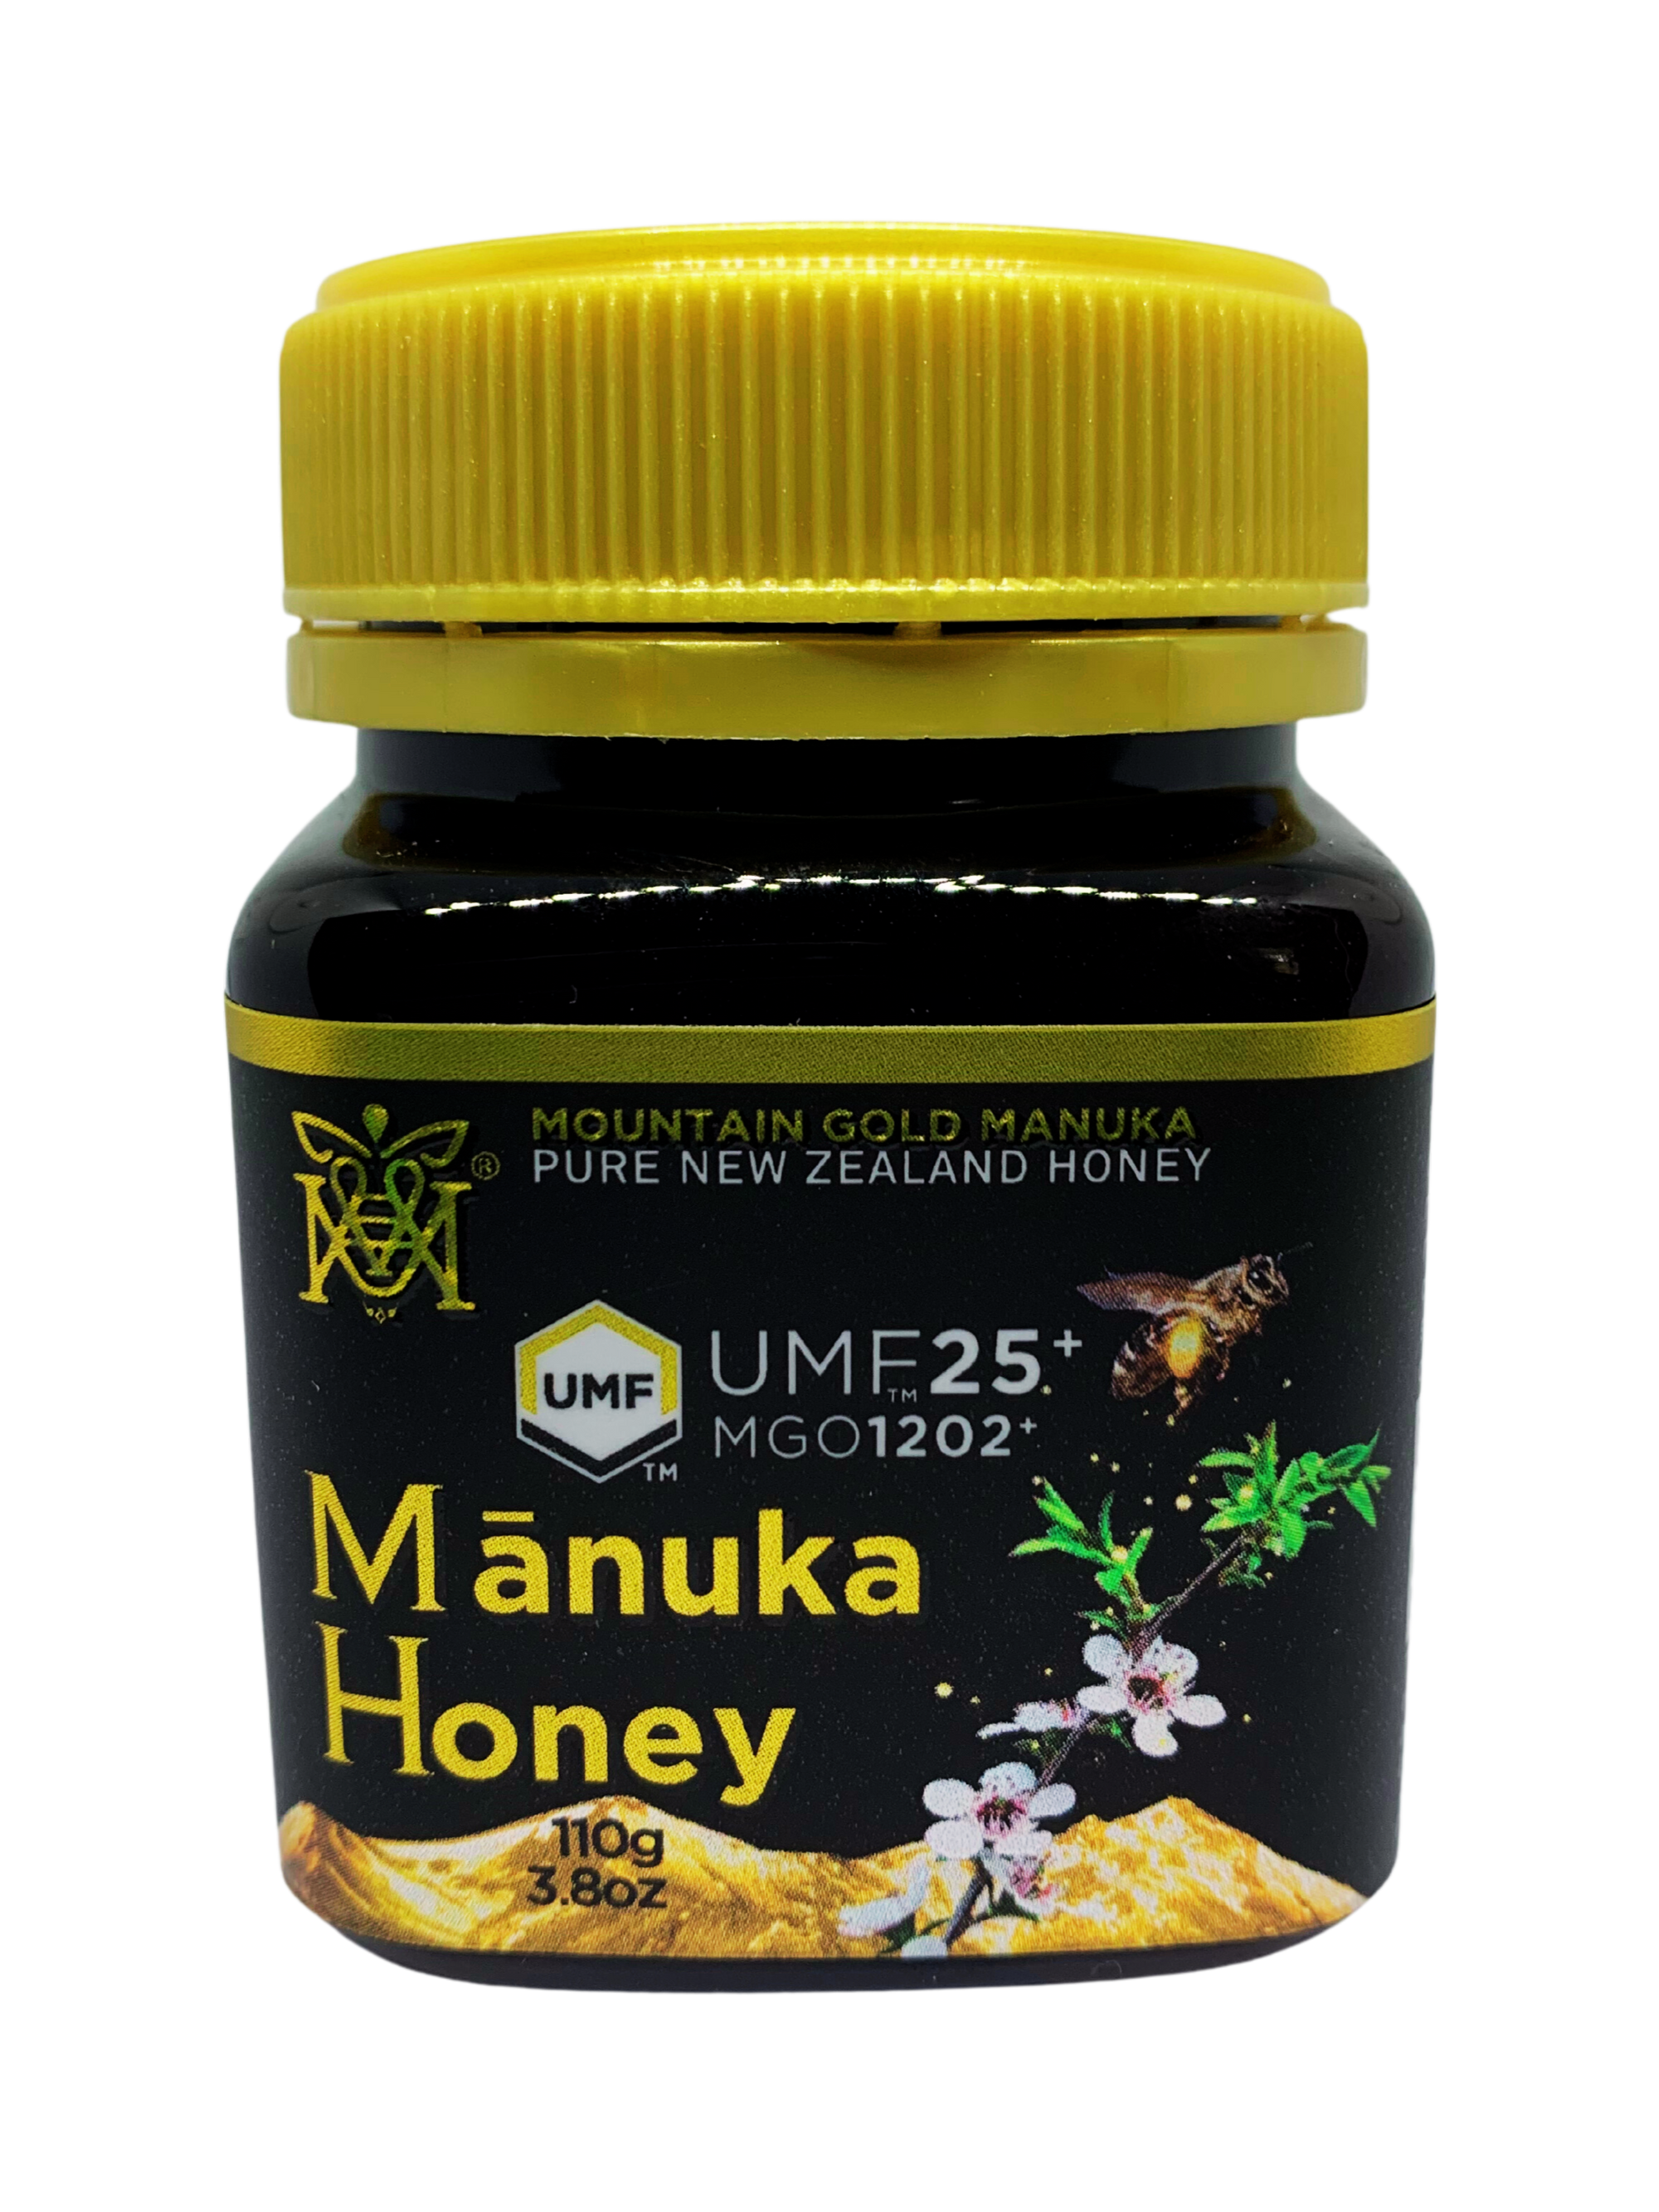 Mountain Gold Manuka Honey UMF25+ MGO 1202+